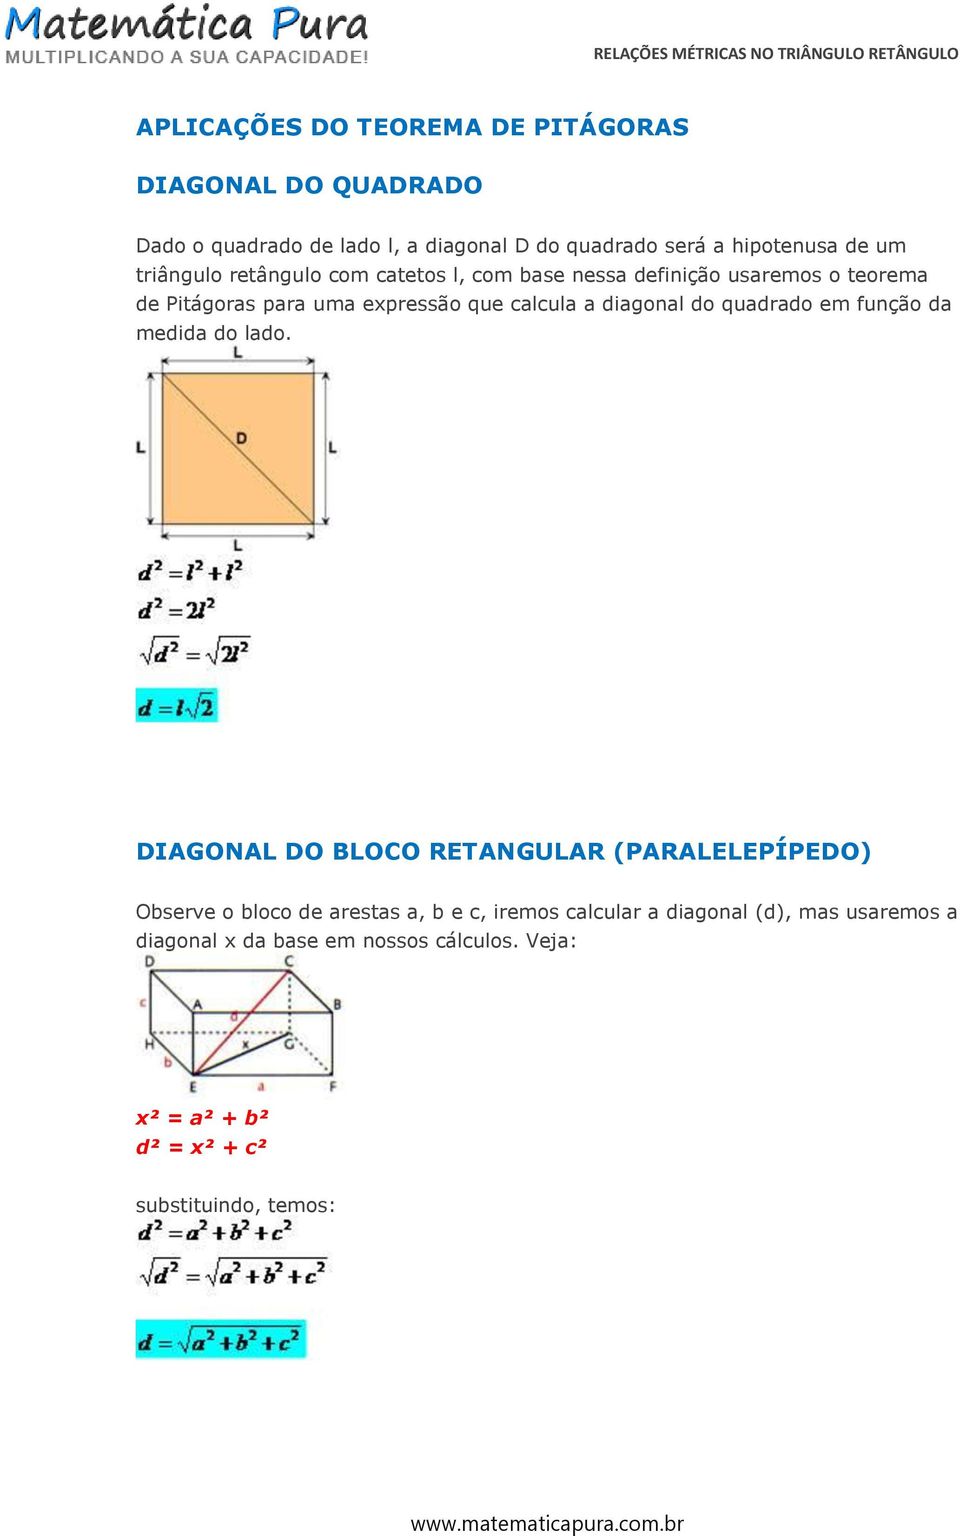 diagonal do quadrado em função da medida do lado.